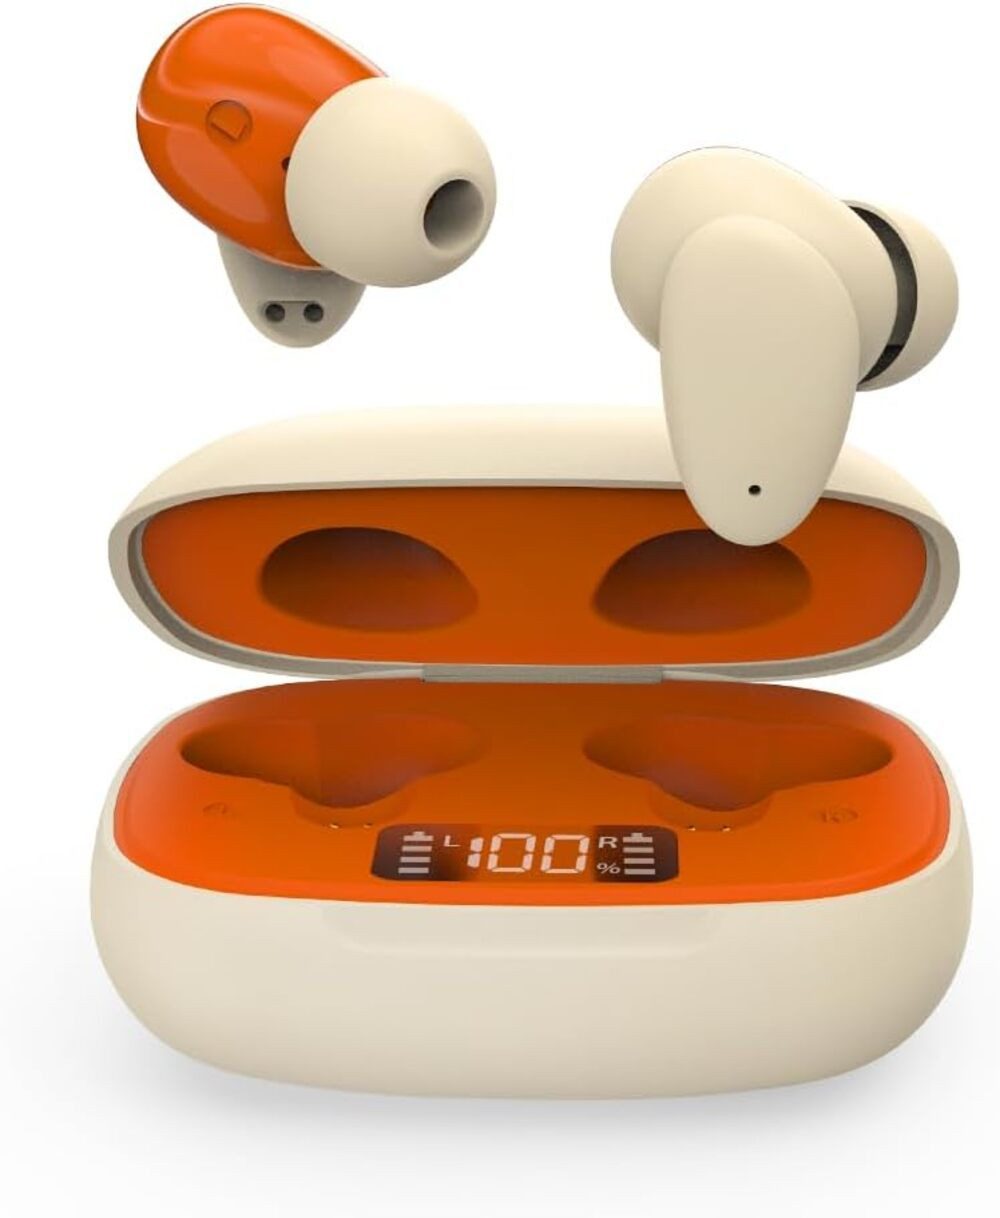 Avantalk Hybrid-ANC-Technologie, Eingebaute Mikrofone In-Ear-Kopfhörer (Lang anhaltende Nutzungsdauer: Bis zu 6 Stunden ununterbrochene Musikwiedergabe, insgesamt 24 Stunden mit Ladeetui., Aktive Geräuschunterdrückung Umgebungsgeräusche bis zu 24dB reduziert)